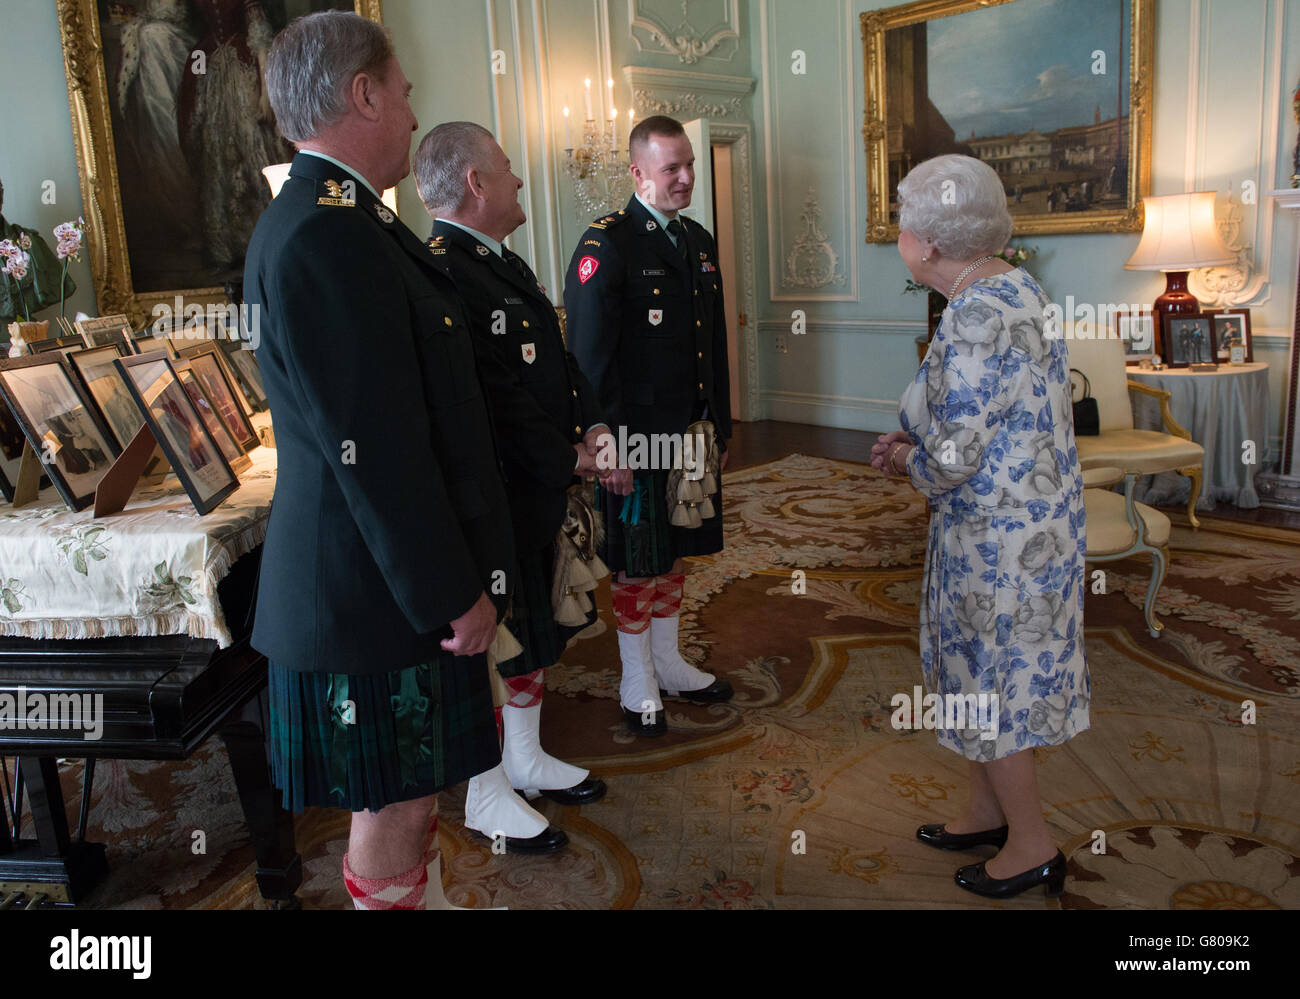 La Reina Isabel II, en su calidad de Coronel en Jefe de los Alteza Argyll y Sutherland de Canadá, recibe (de izquierda a derecha) al Coronel Ronald Foxcroft (Coronel Honorario), al Teniente Richard Kennedy (Teniente Coronel Honorario) y al Teniente Coronel Lawrence Hatfield (Comandante) en el Palacio de Buckingham en Londres. Foto de stock